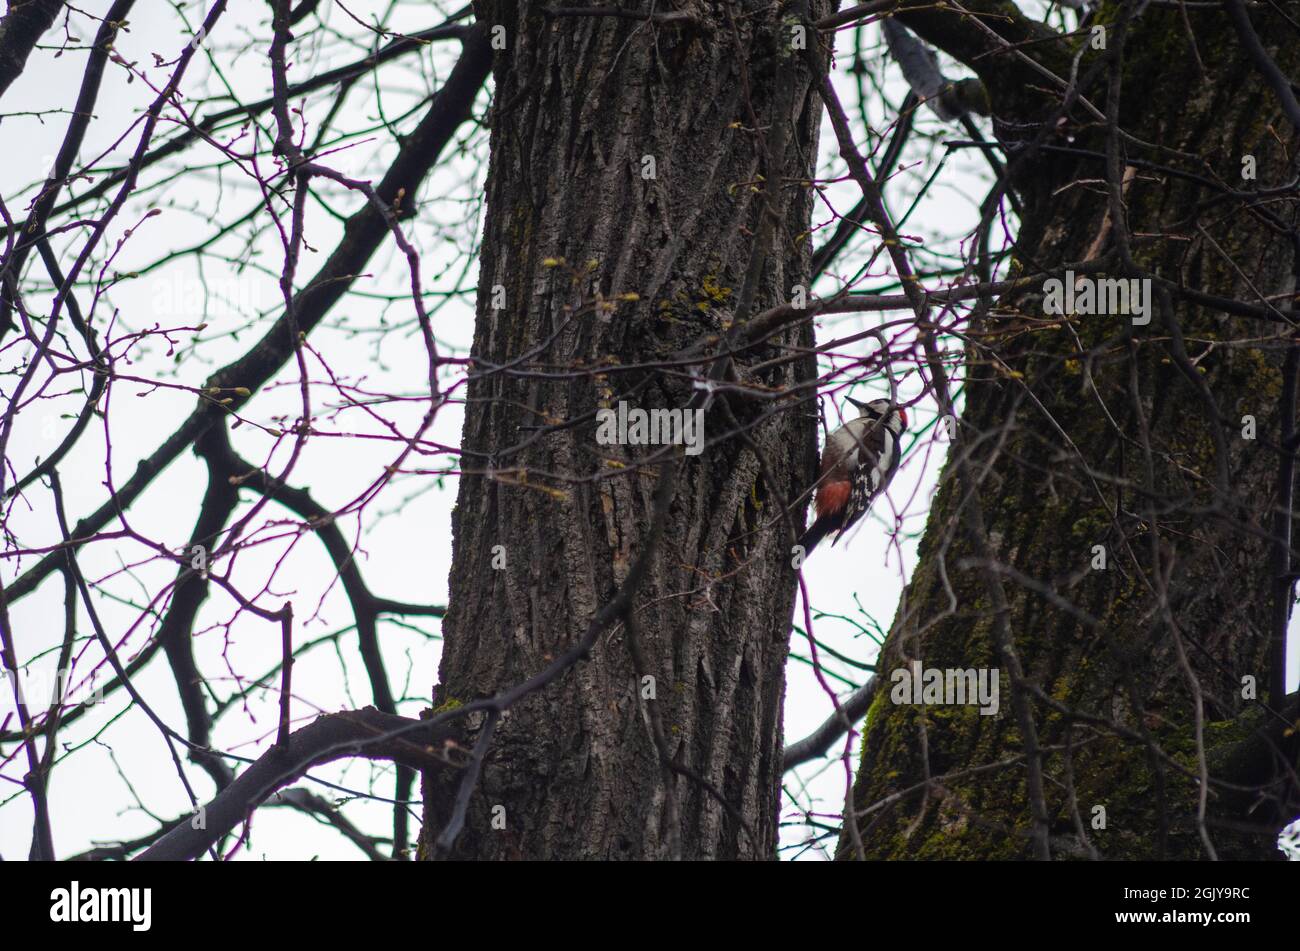 Un pic syrien (Dendrocopos syriacus) sur le ranch d'un arbre dans les forêts des Carpates en Transylvanie Roumanie Banque D'Images